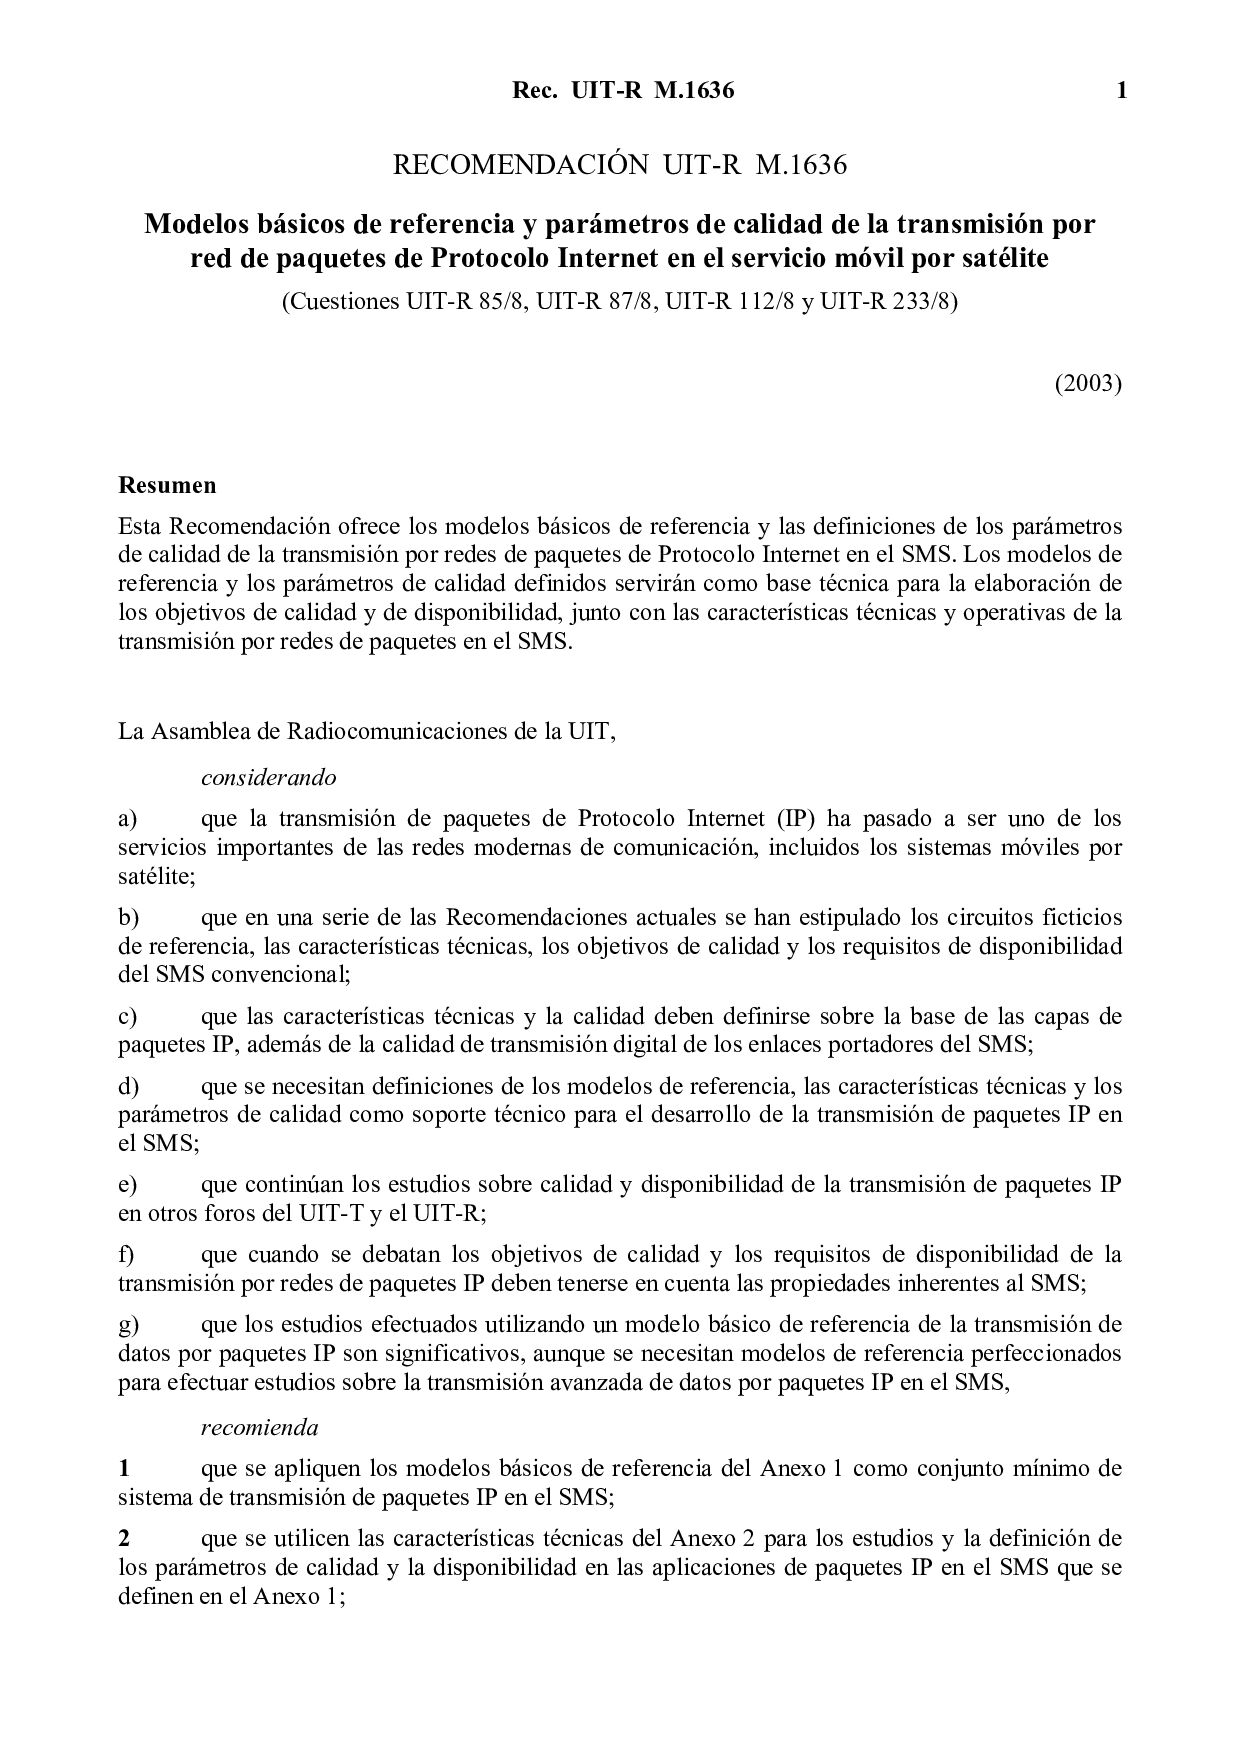 ITU-R M.1636 SPANISH-2003